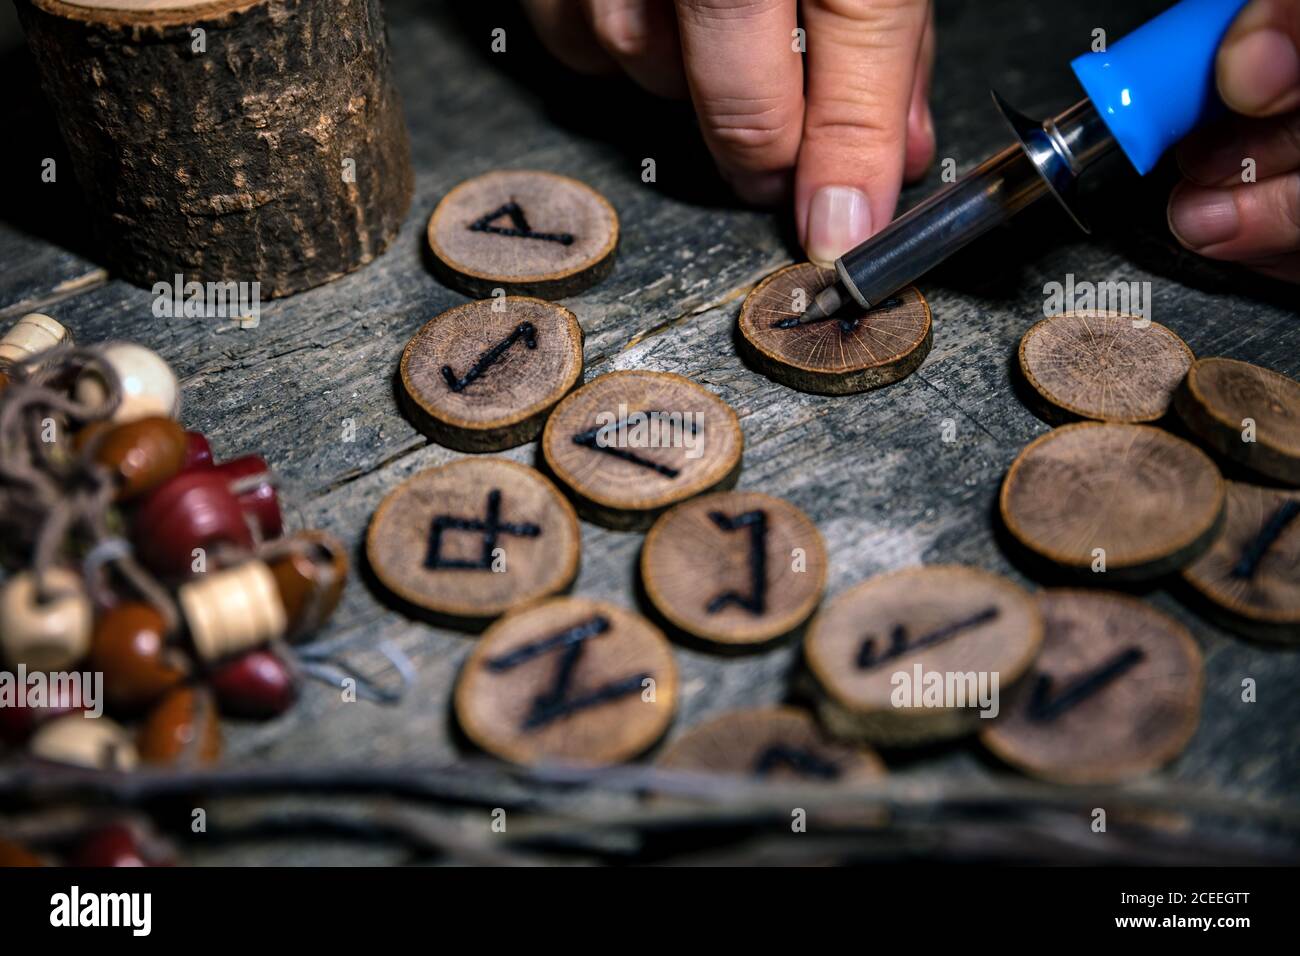 hombre escribiendo runas de madera con una pirografía o pokerwork, fondo esotérico Foto de stock